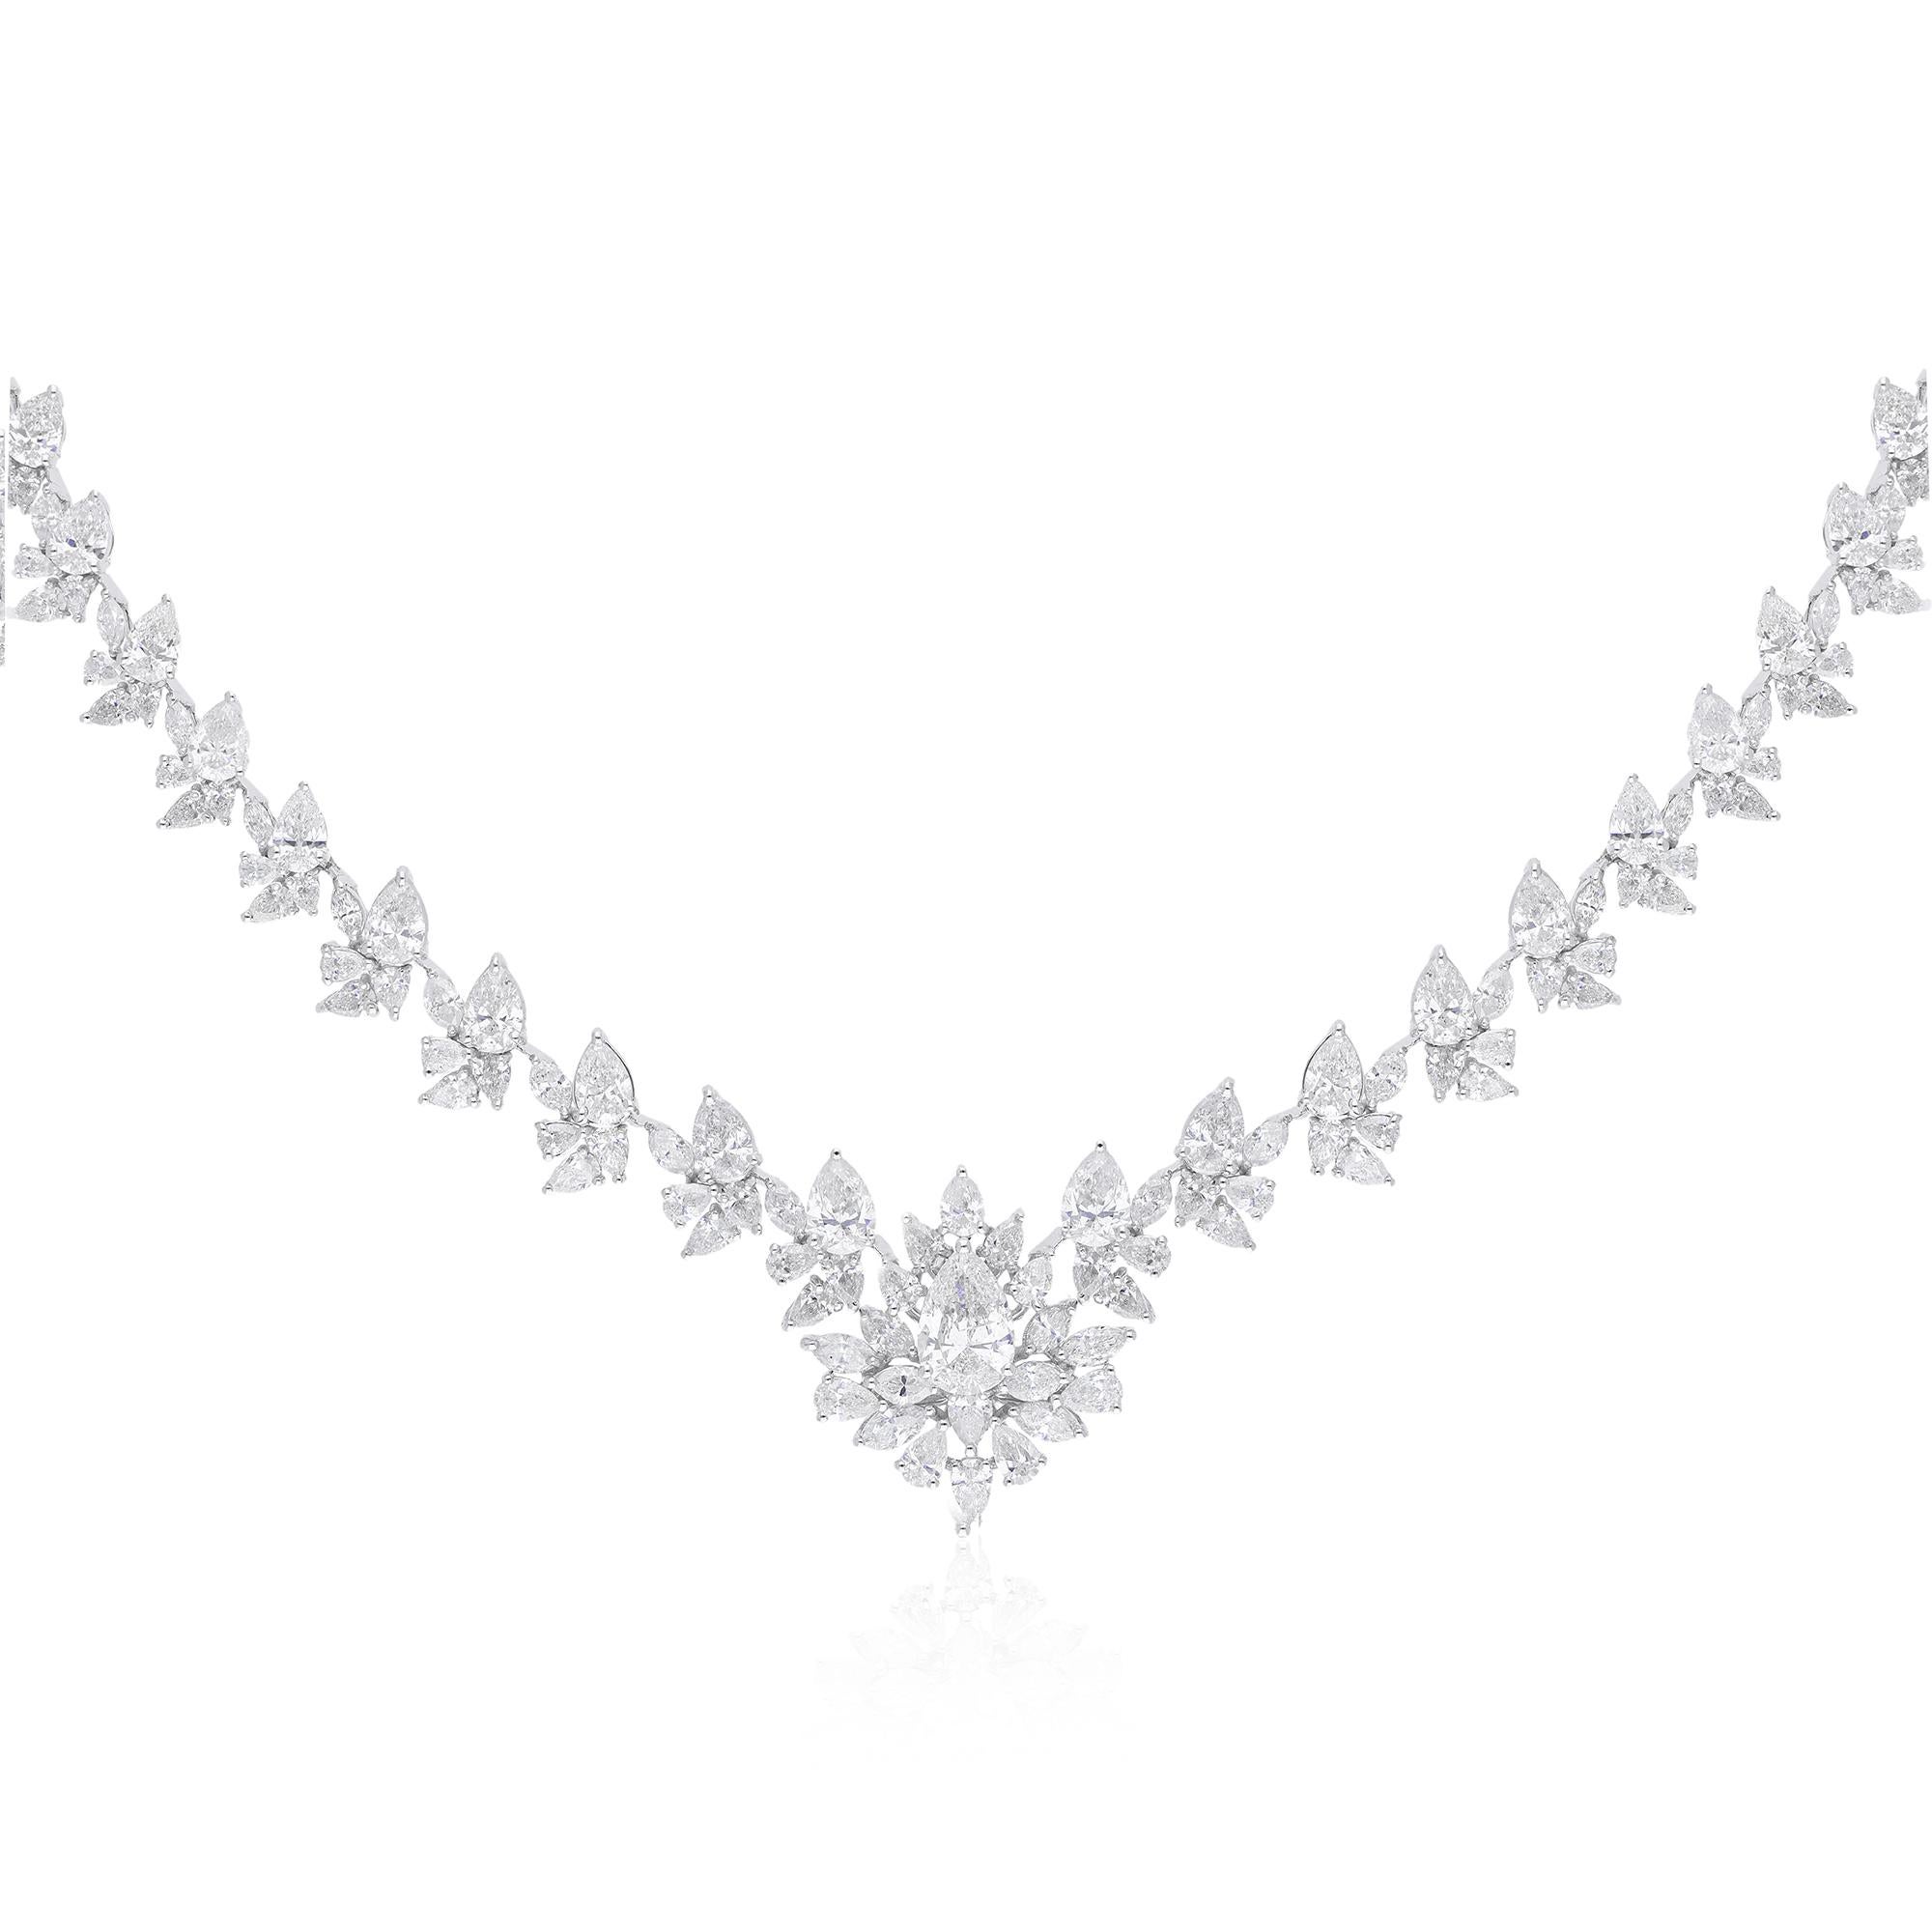 Au cœur de ce collier exquis se trouve un superbe diamant poire taille marquise de 17,24 carats, méticuleusement sélectionné pour sa brillance et sa clarté inégalées. La taille poire marquise, réputée pour sa forme allongée et ses courbes